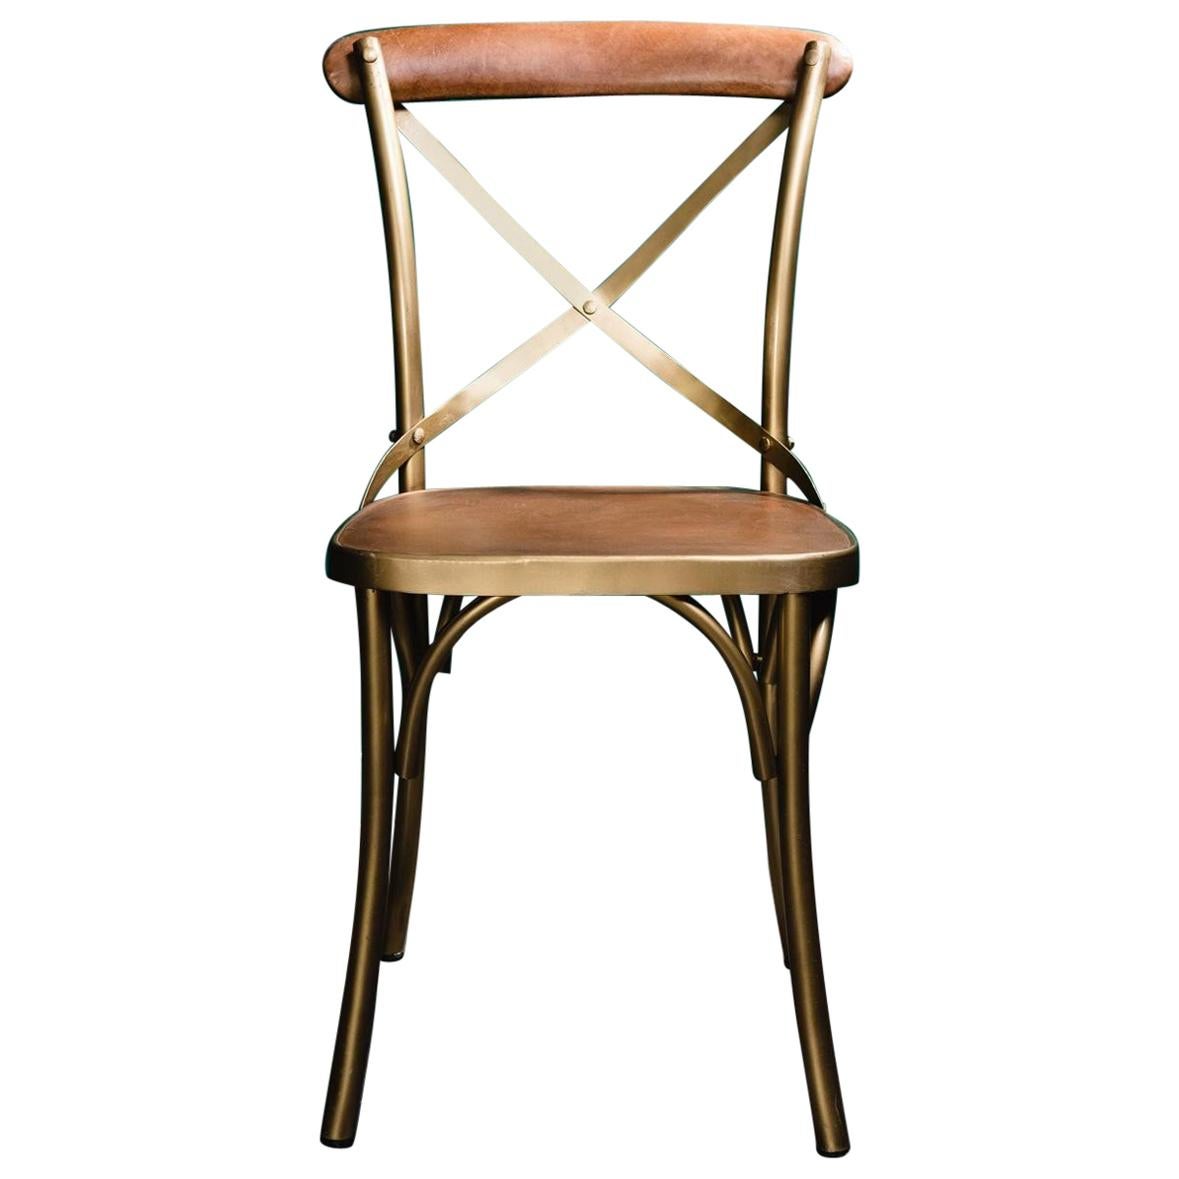 Stuhl im Bistro-Stil aus Metall und cognacfarbenem Leder im französischen Design